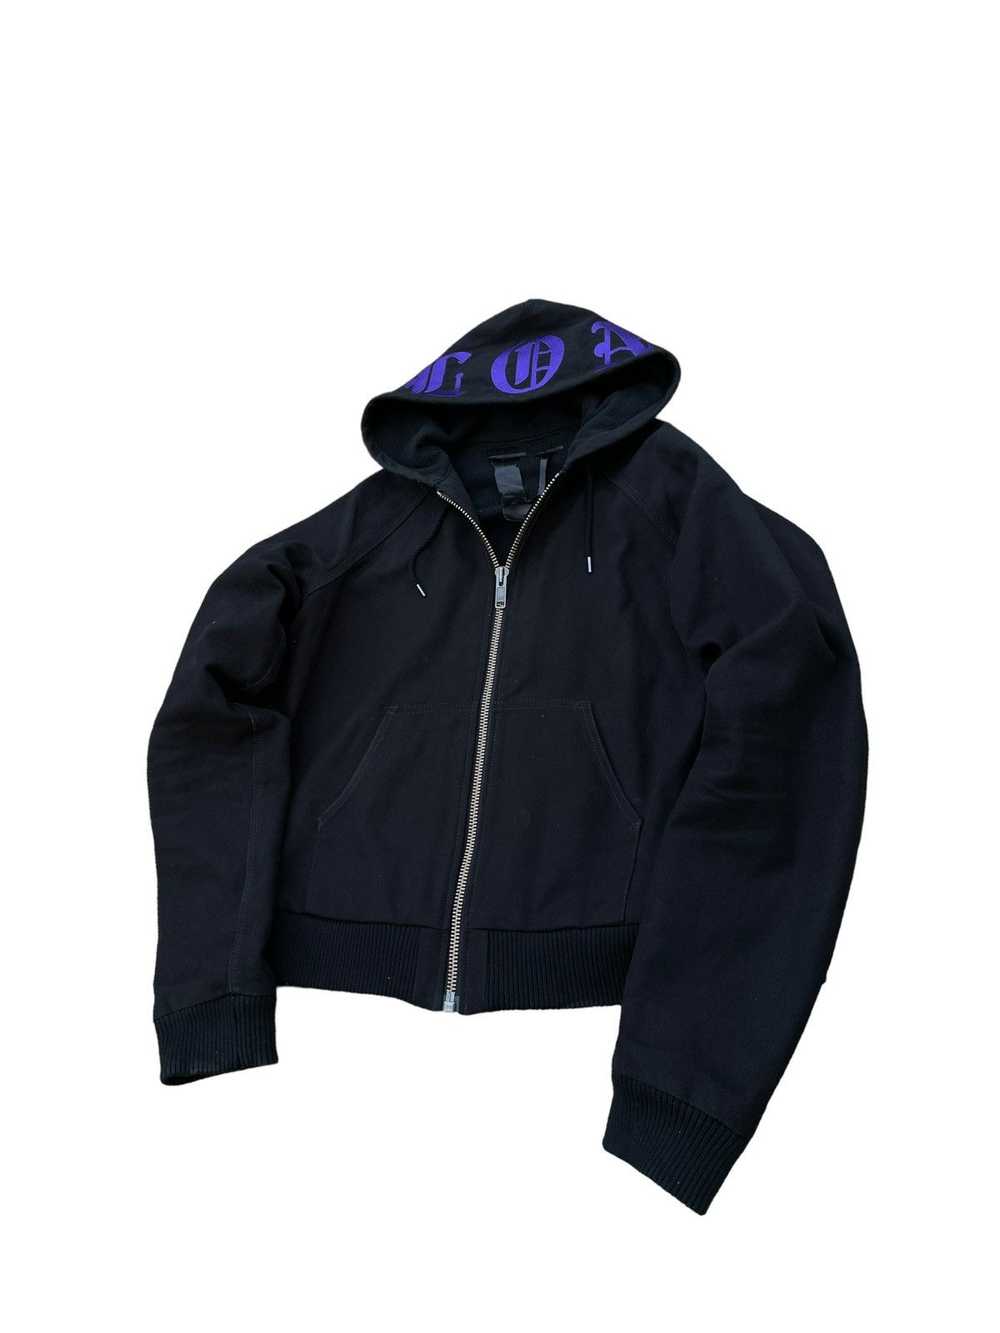 Vlone Vlone runway worker jacket - image 2